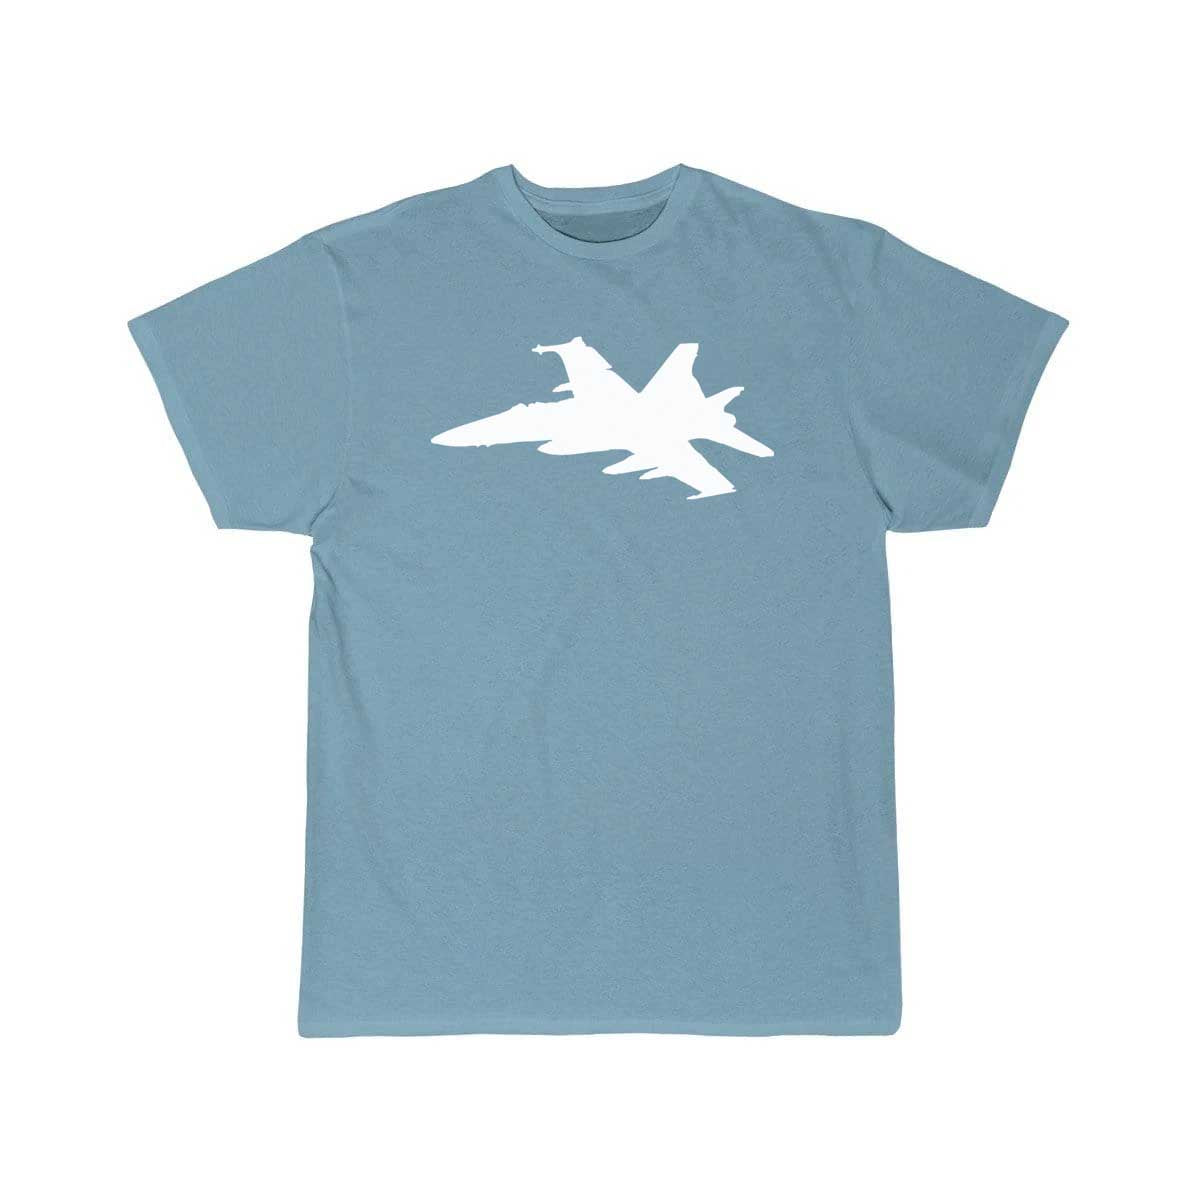 Airplane Fighter T Shirt THE AV8R